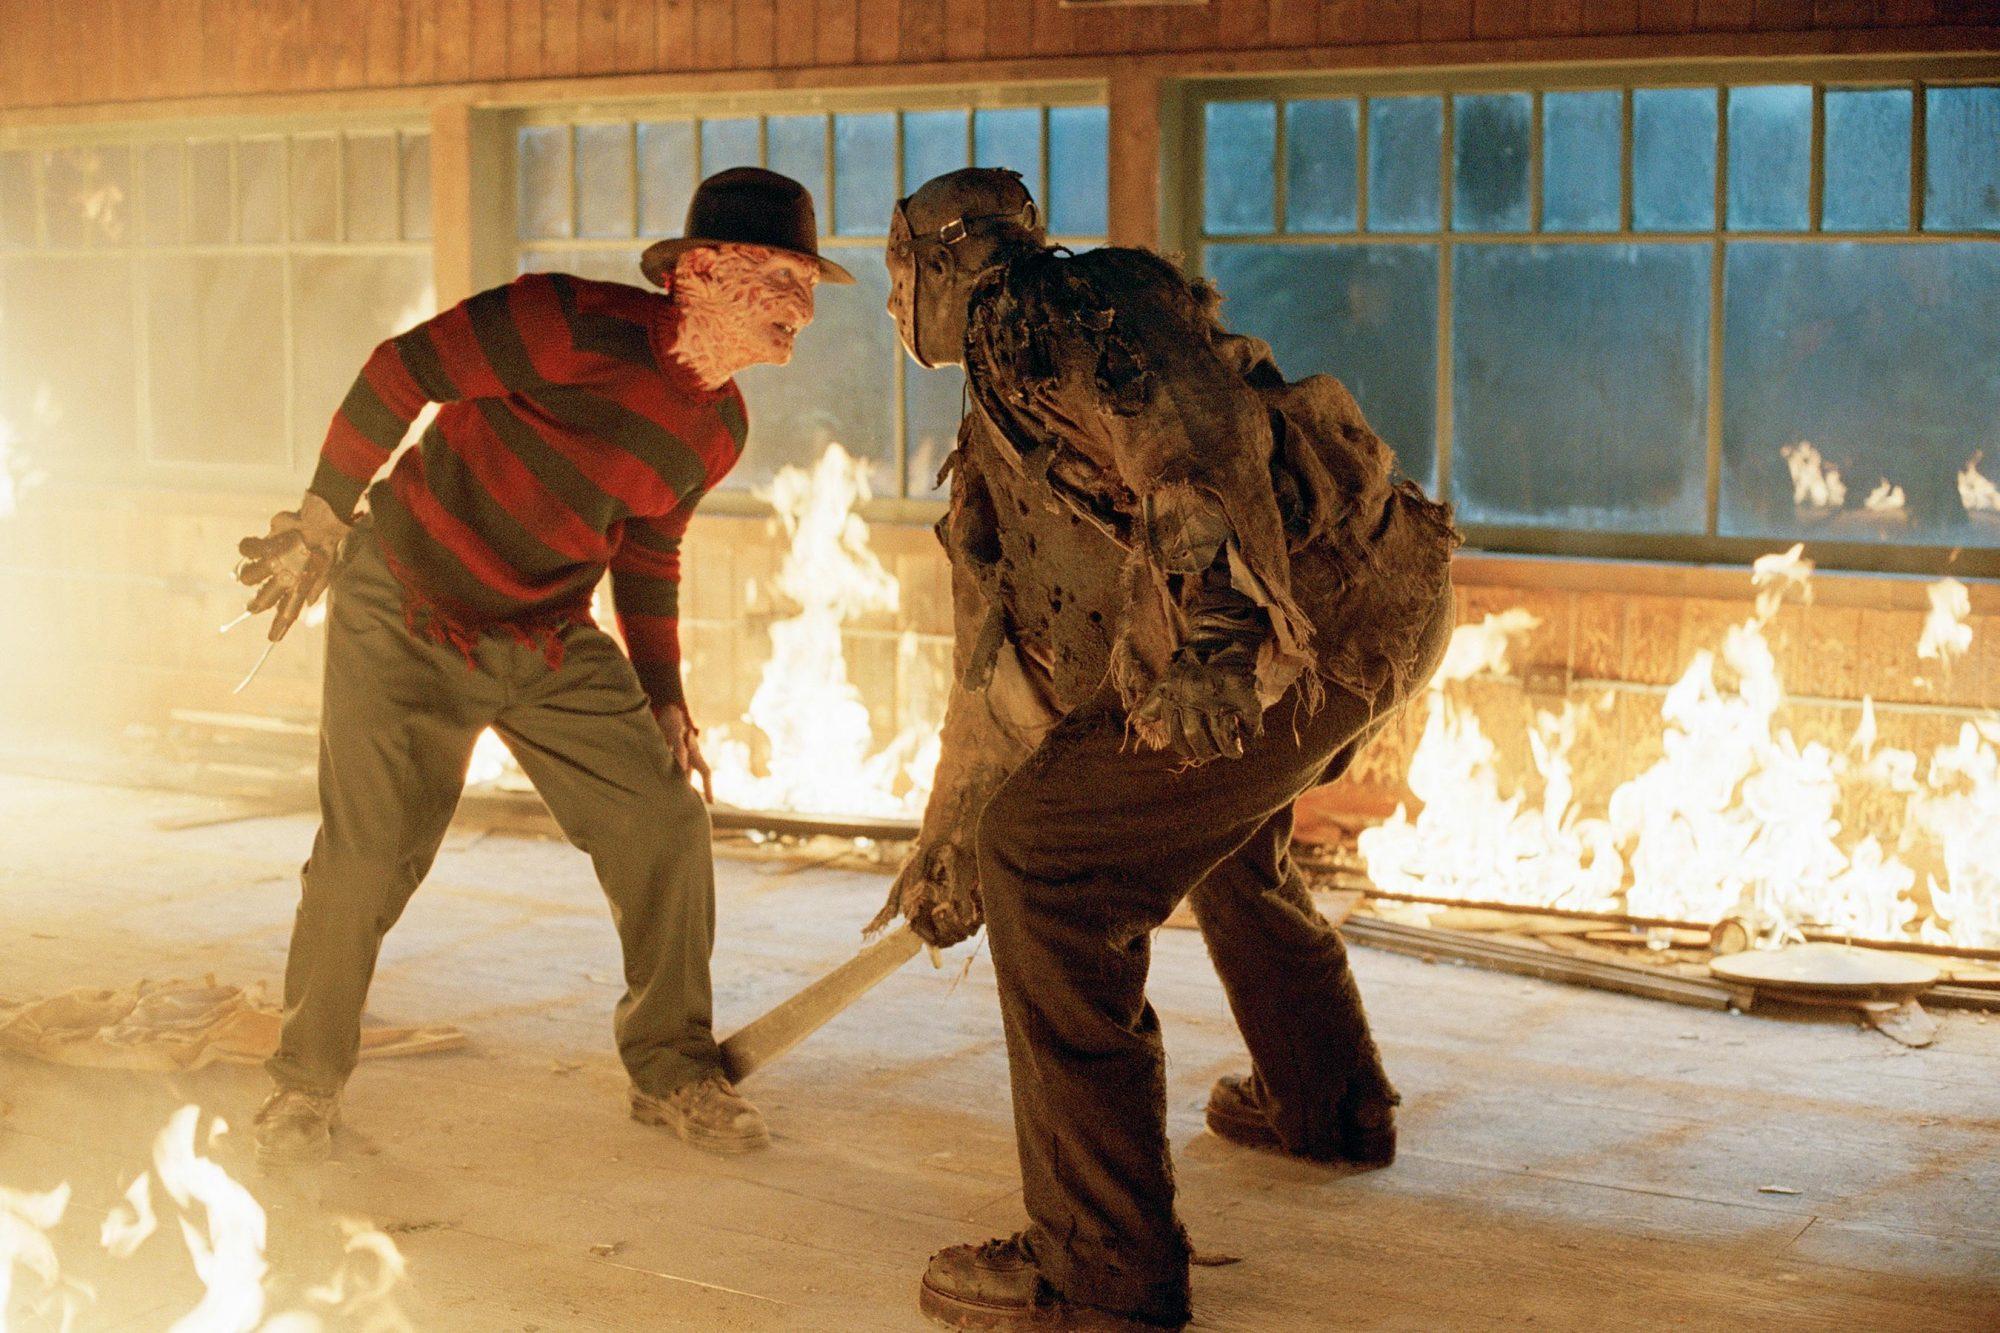 Freddy vs Jason review